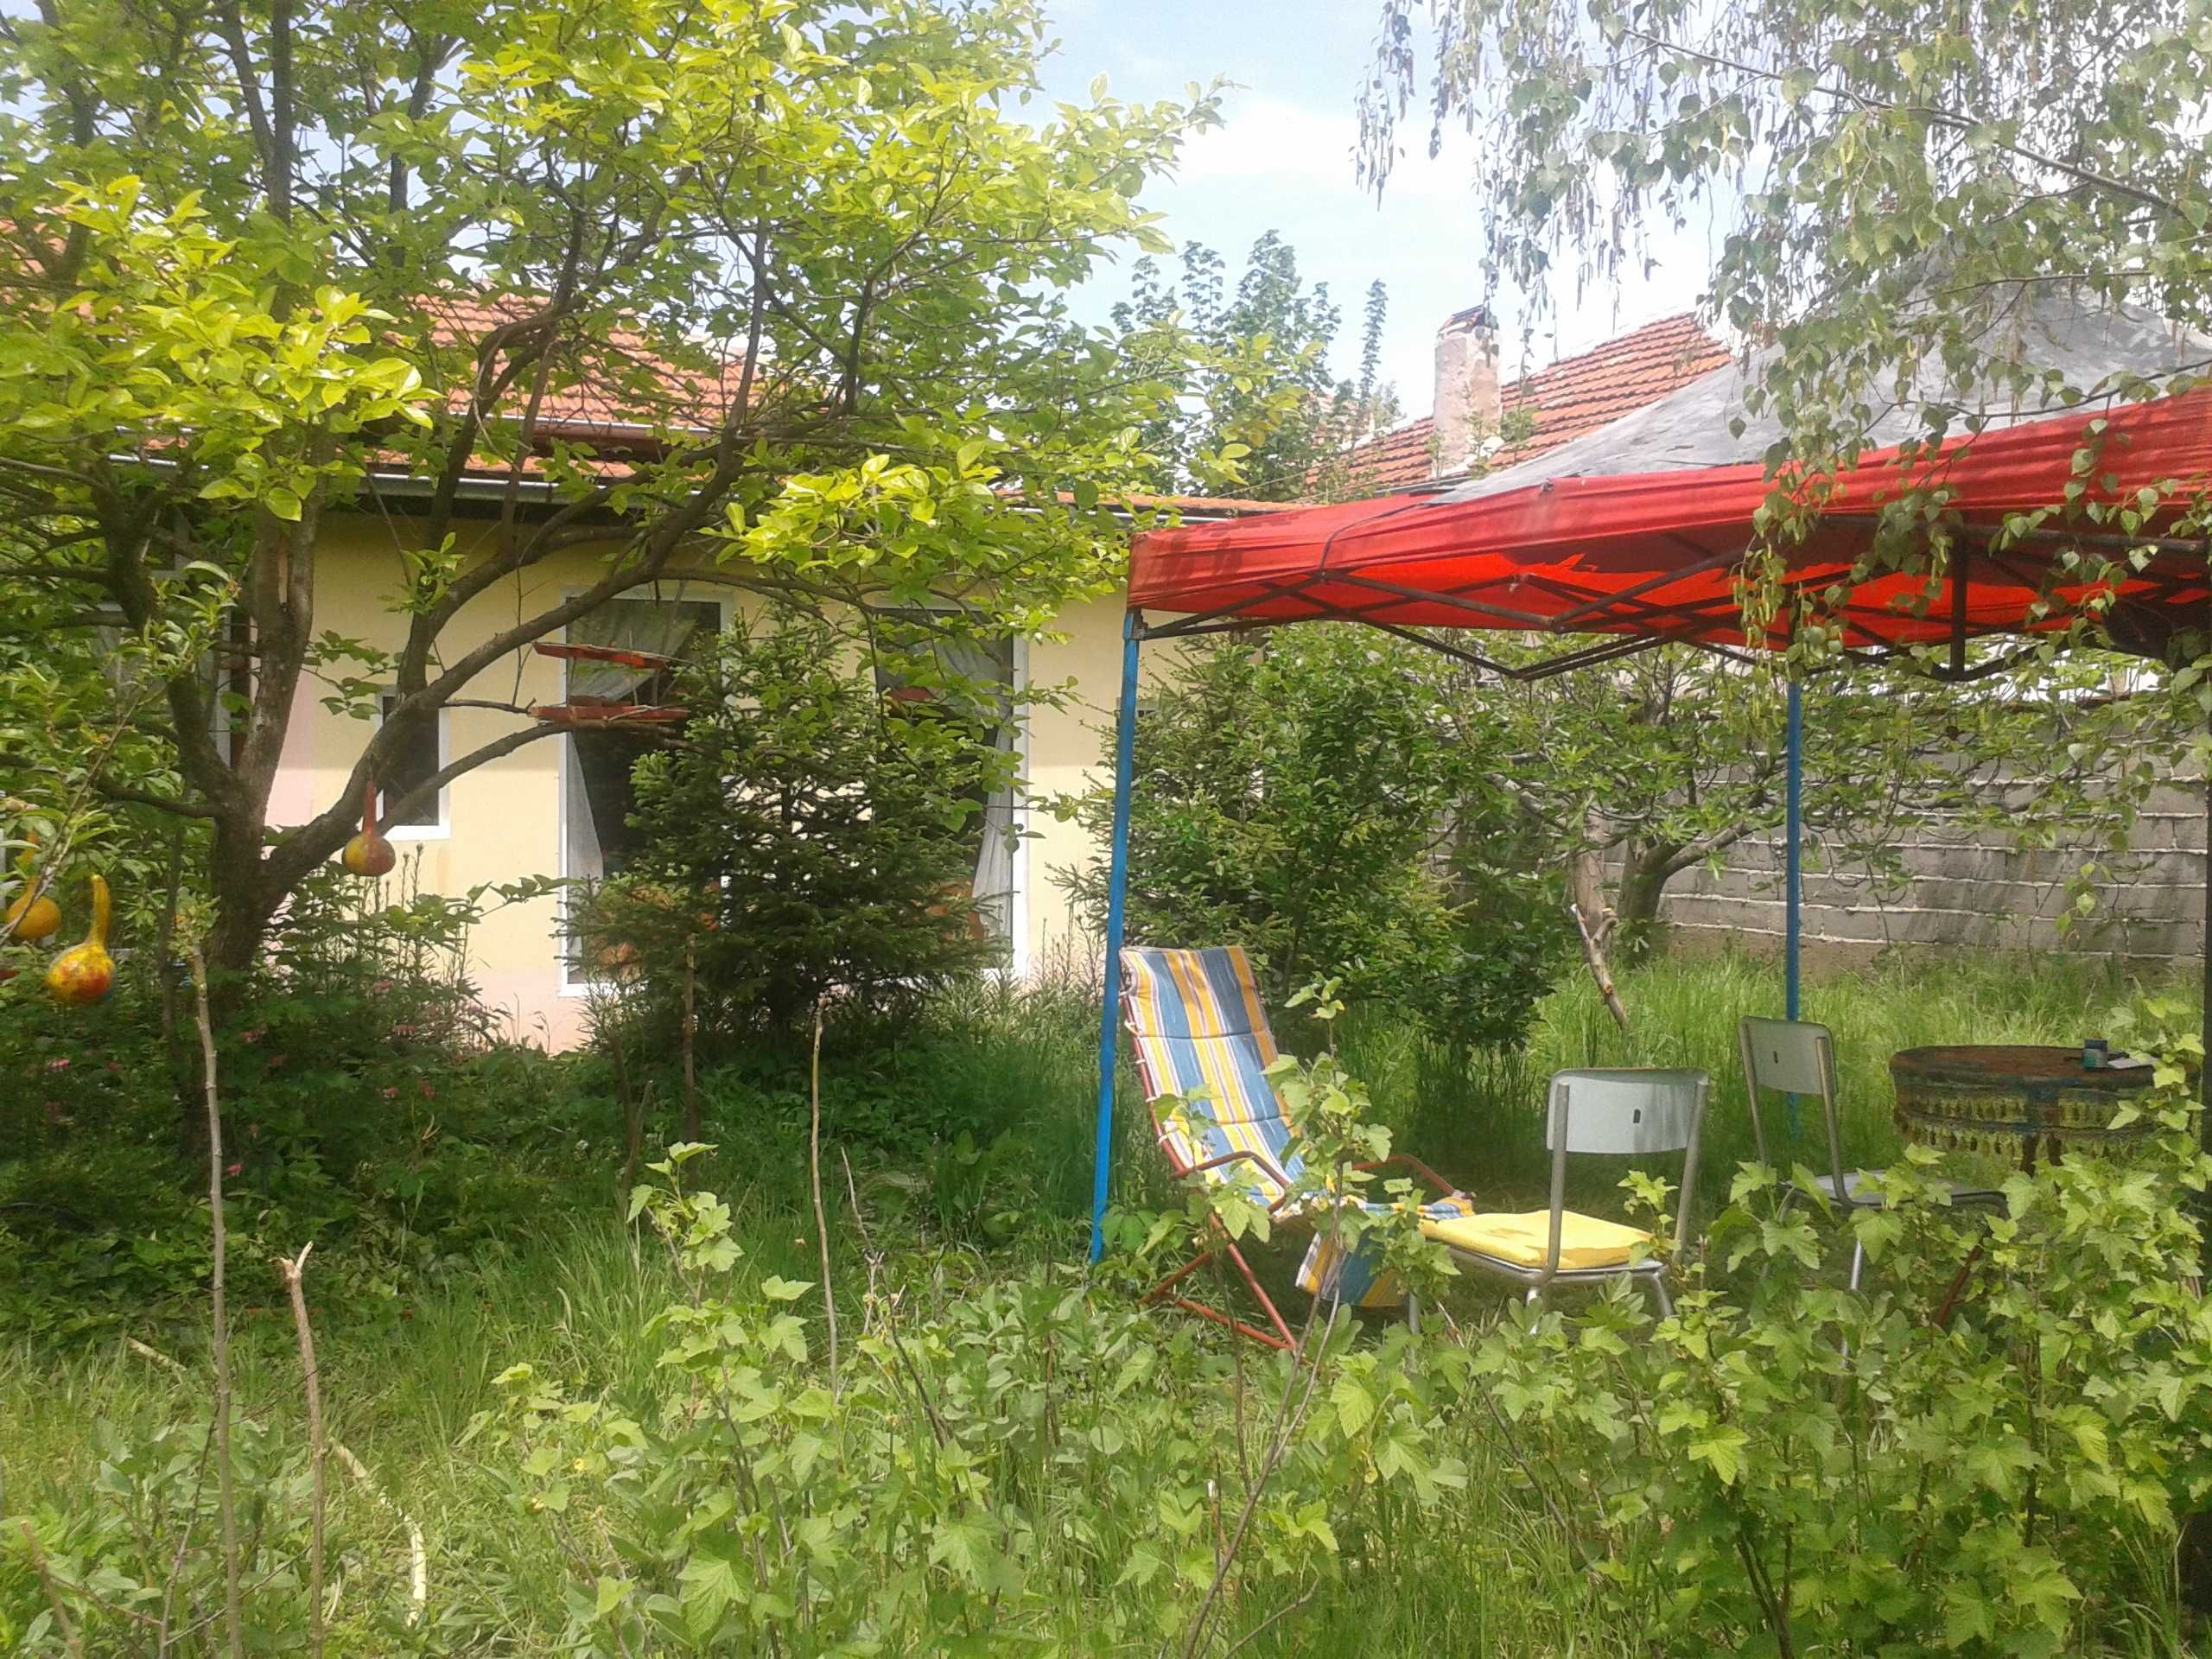 Къща на един етаж с градина, с. Юнаците, 7 км от Пазарджик